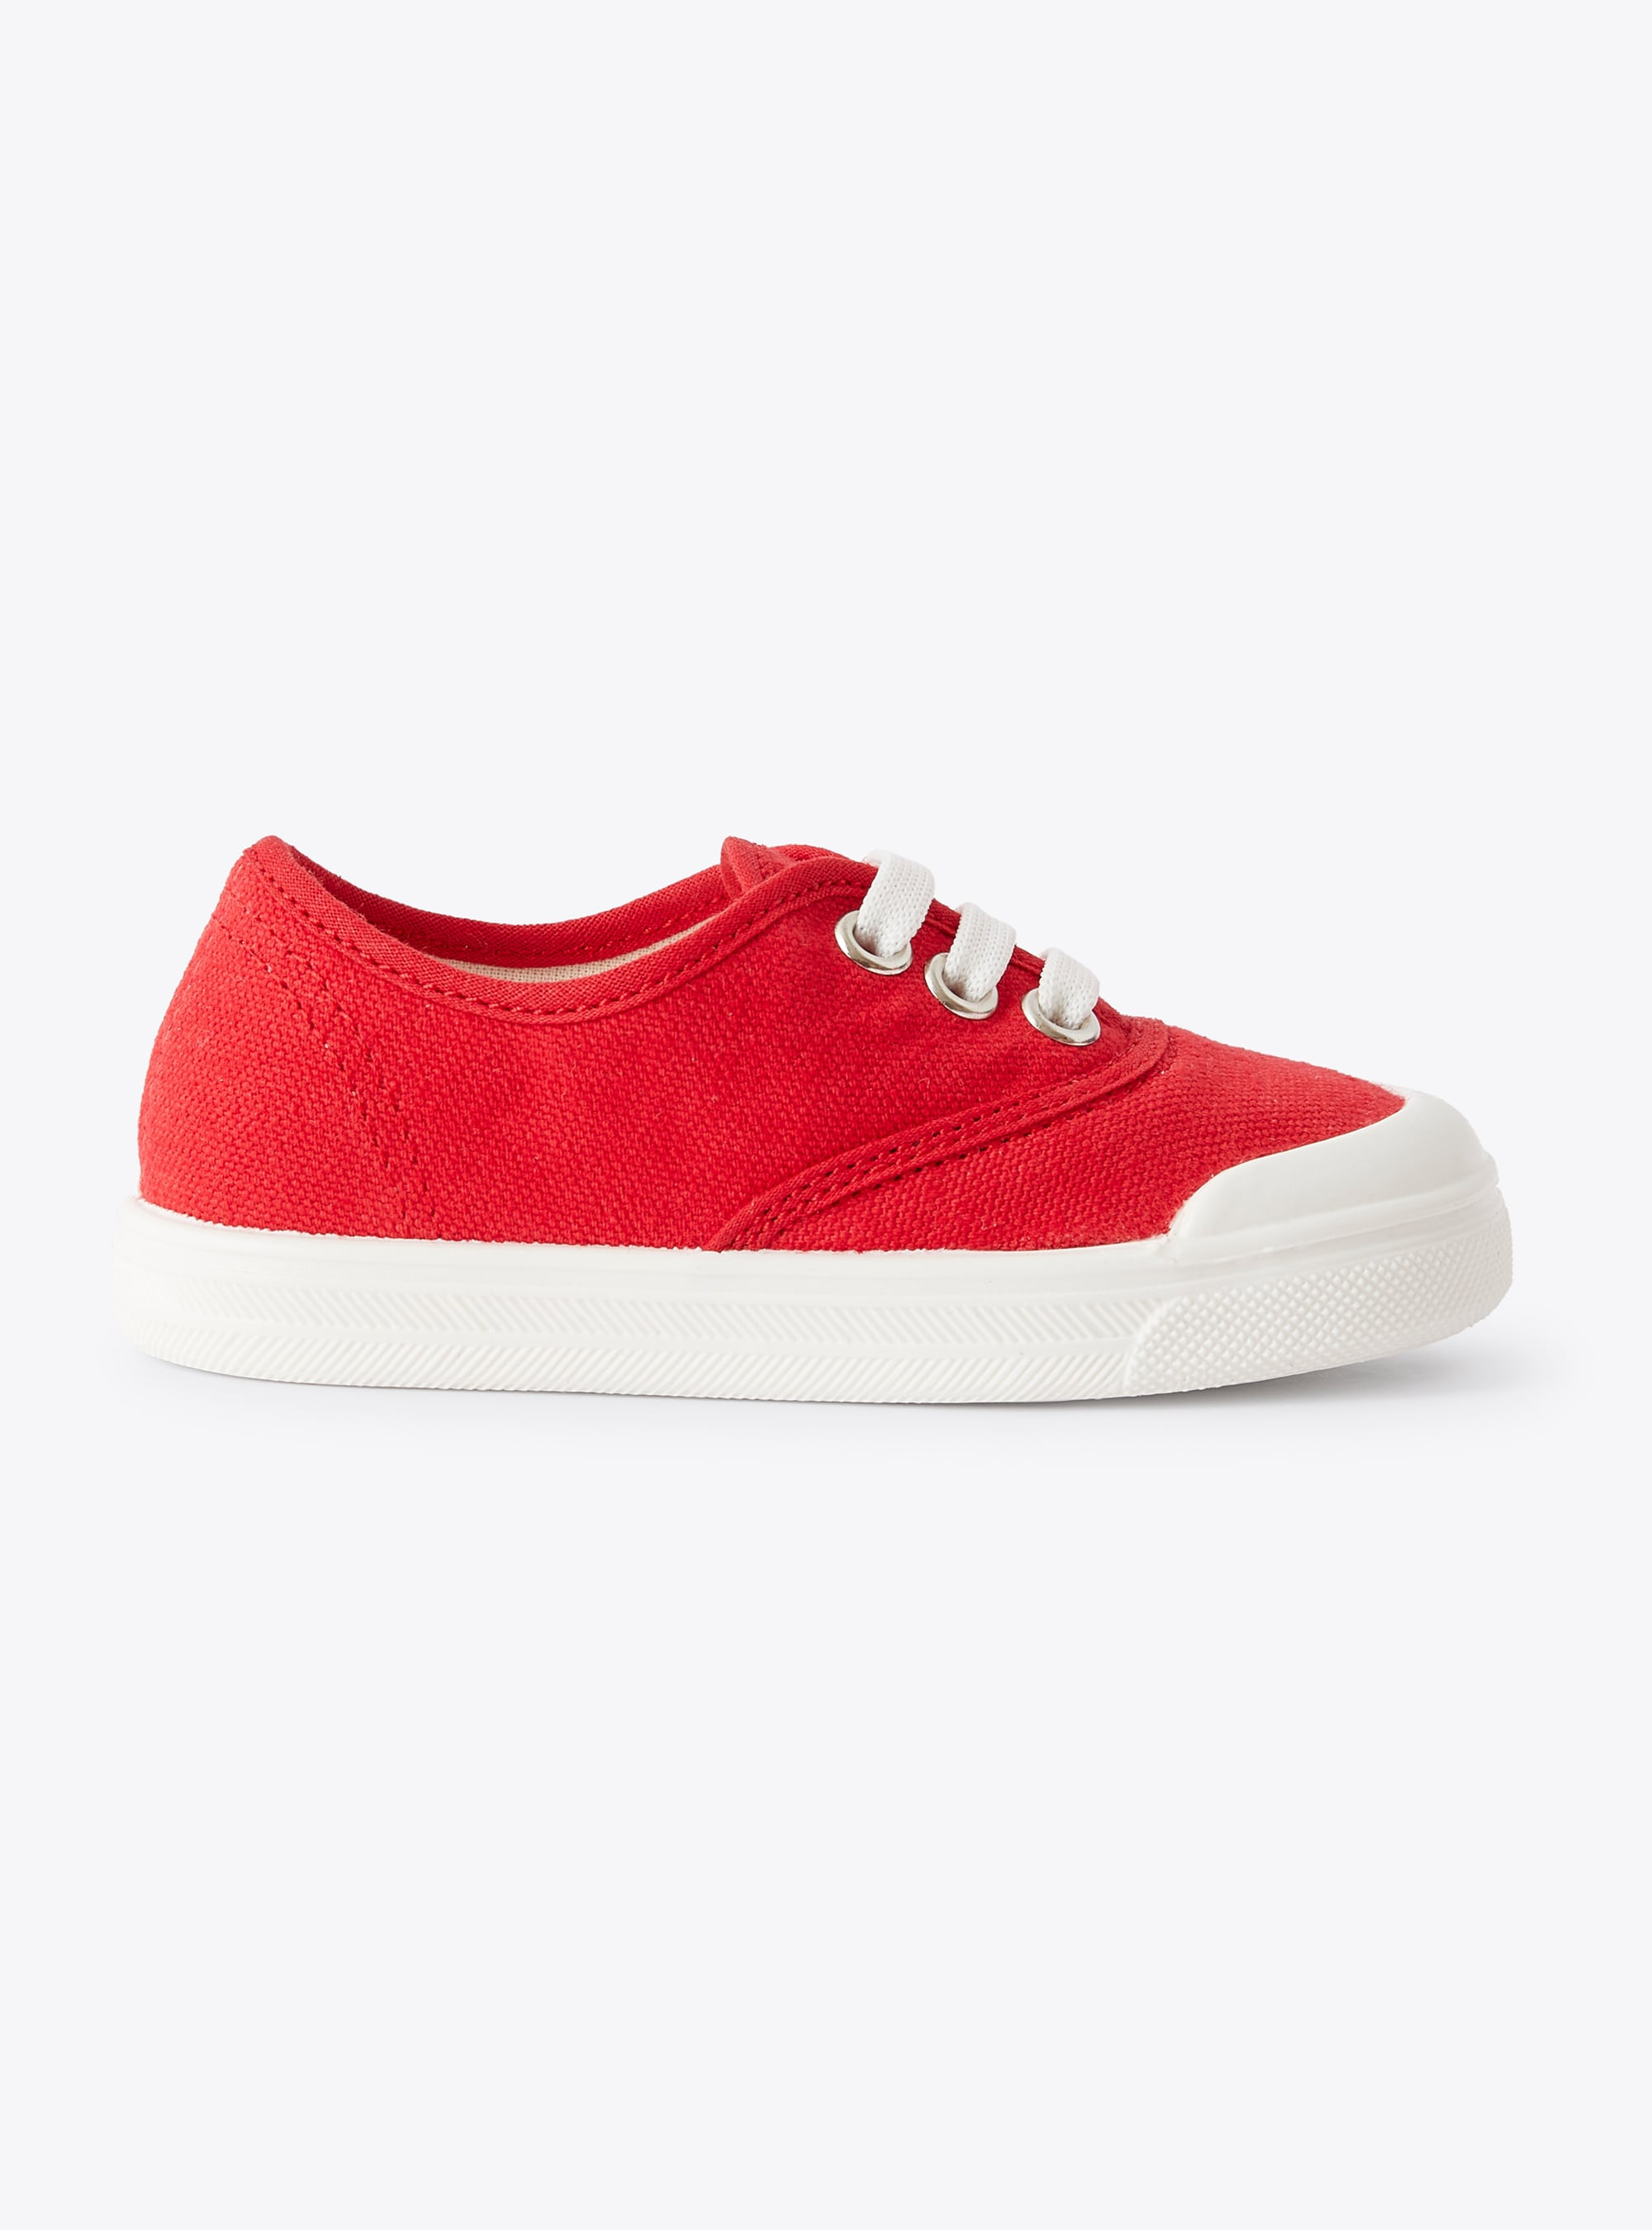 Sneakers aus rotem Segeltuch mit Schnürsenkeln - Rot | Il Gufo